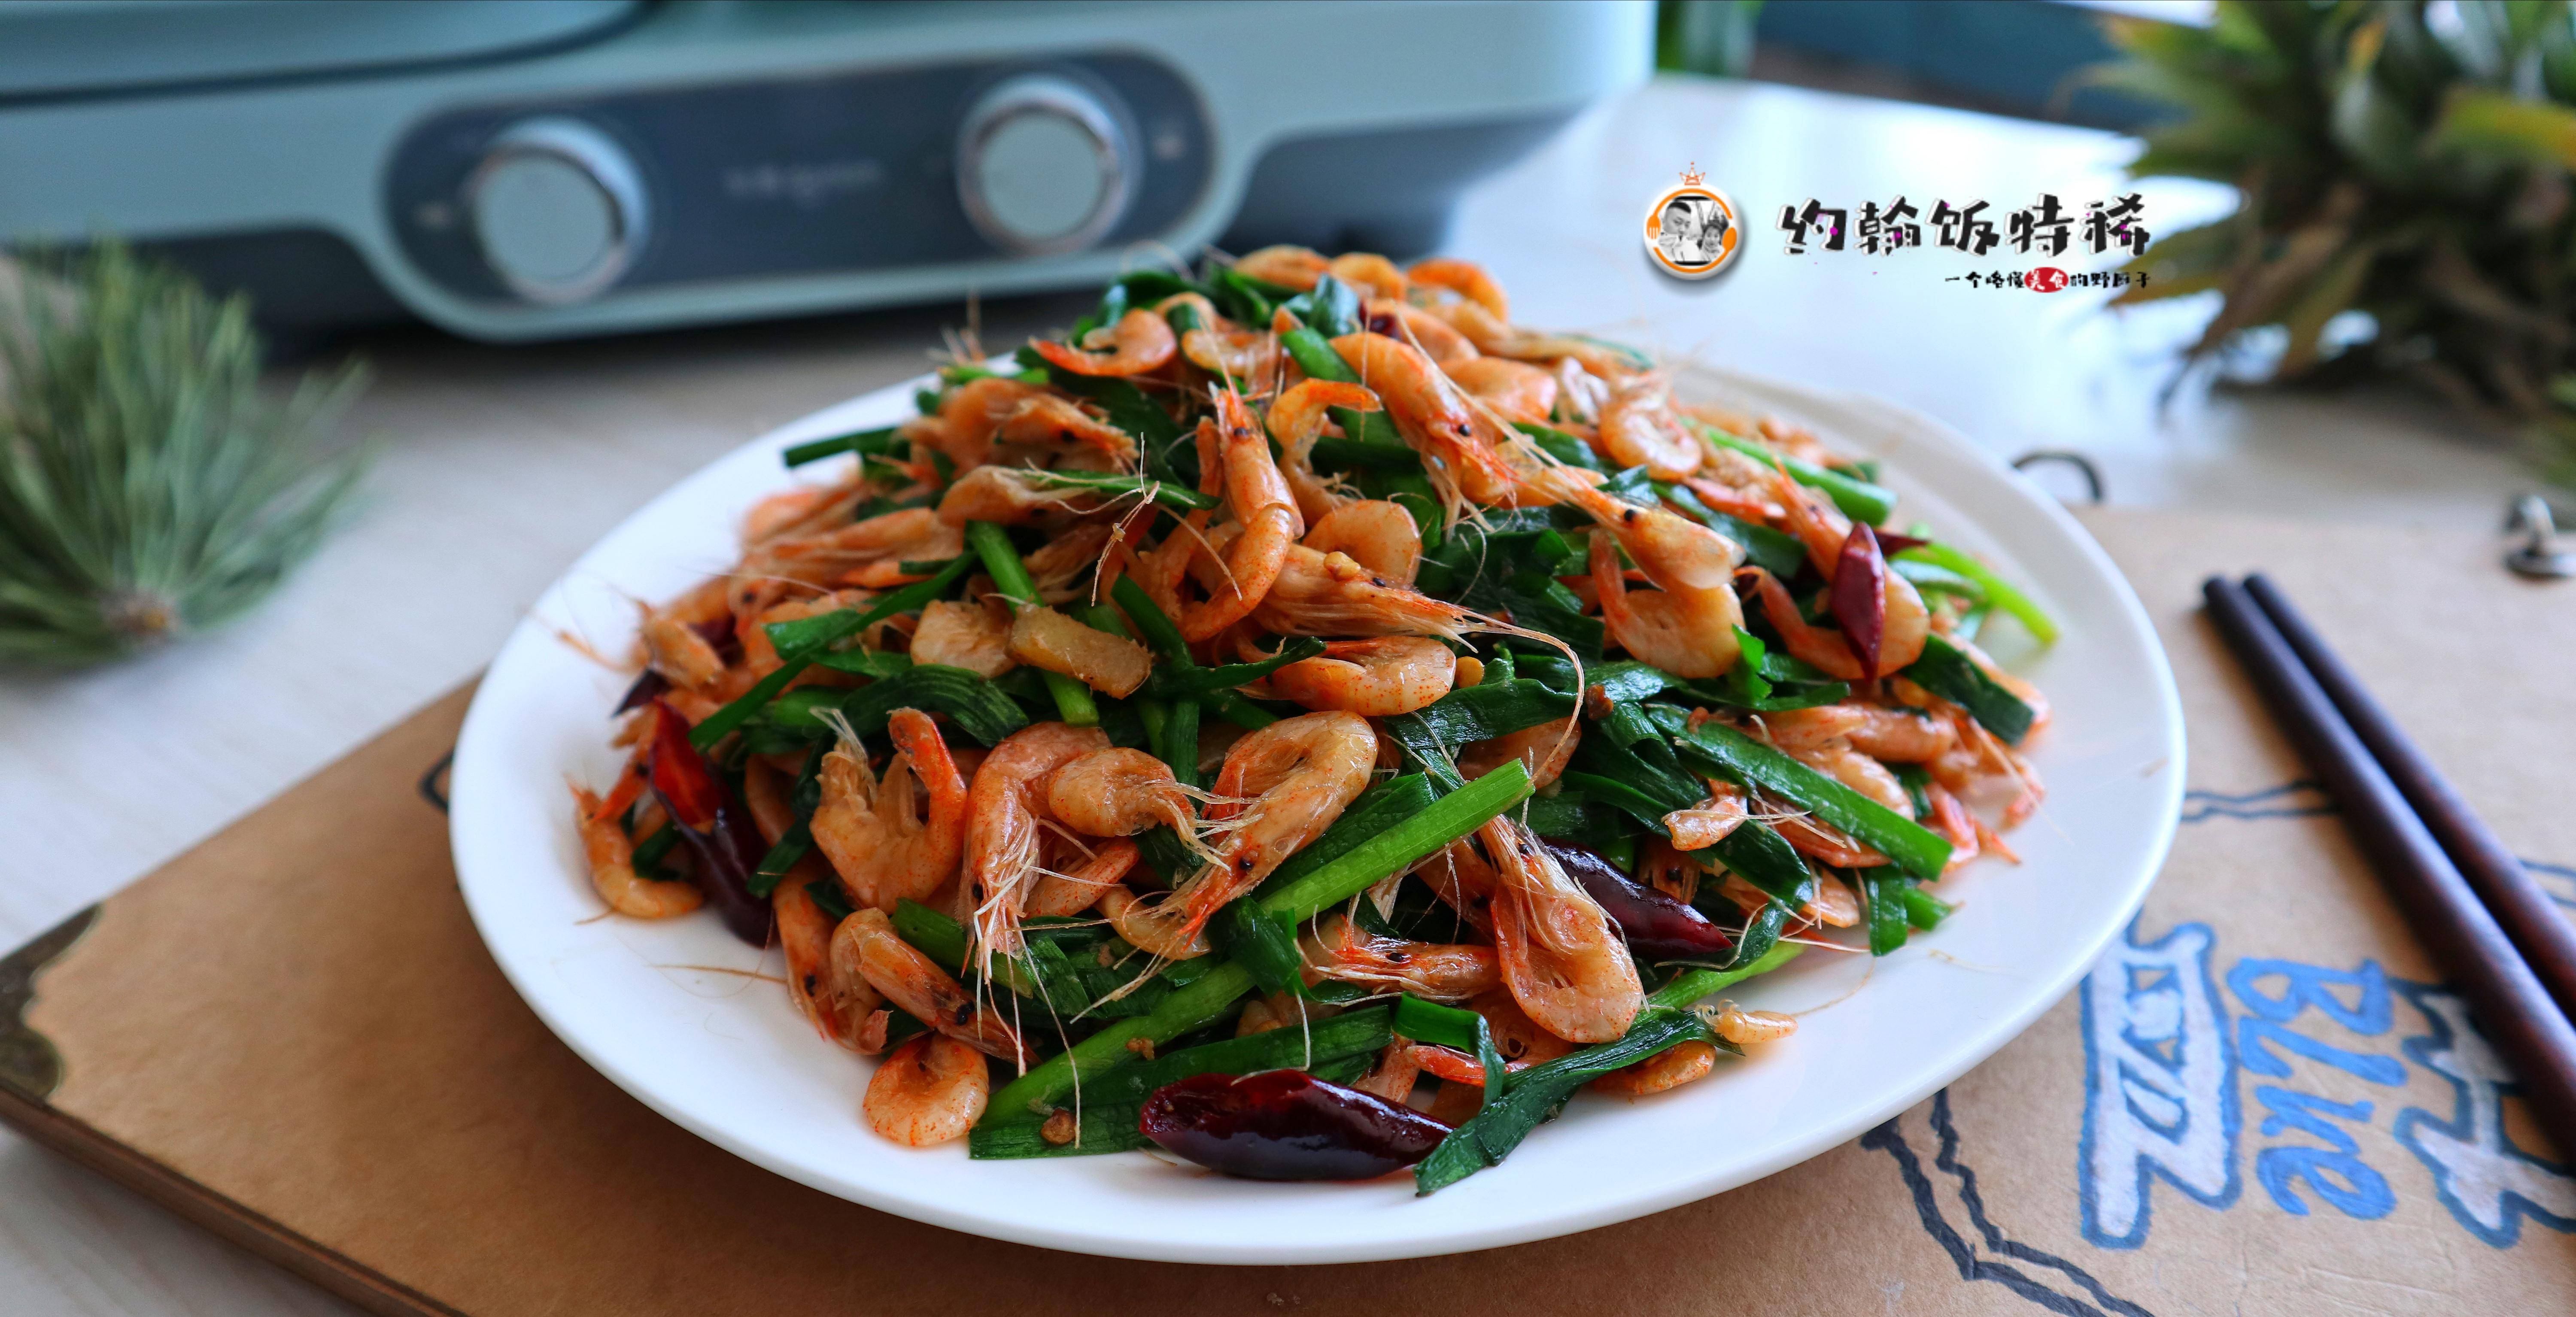 原创小白虾炒韭菜一道让人着迷的家常菜做法简单食材不贵